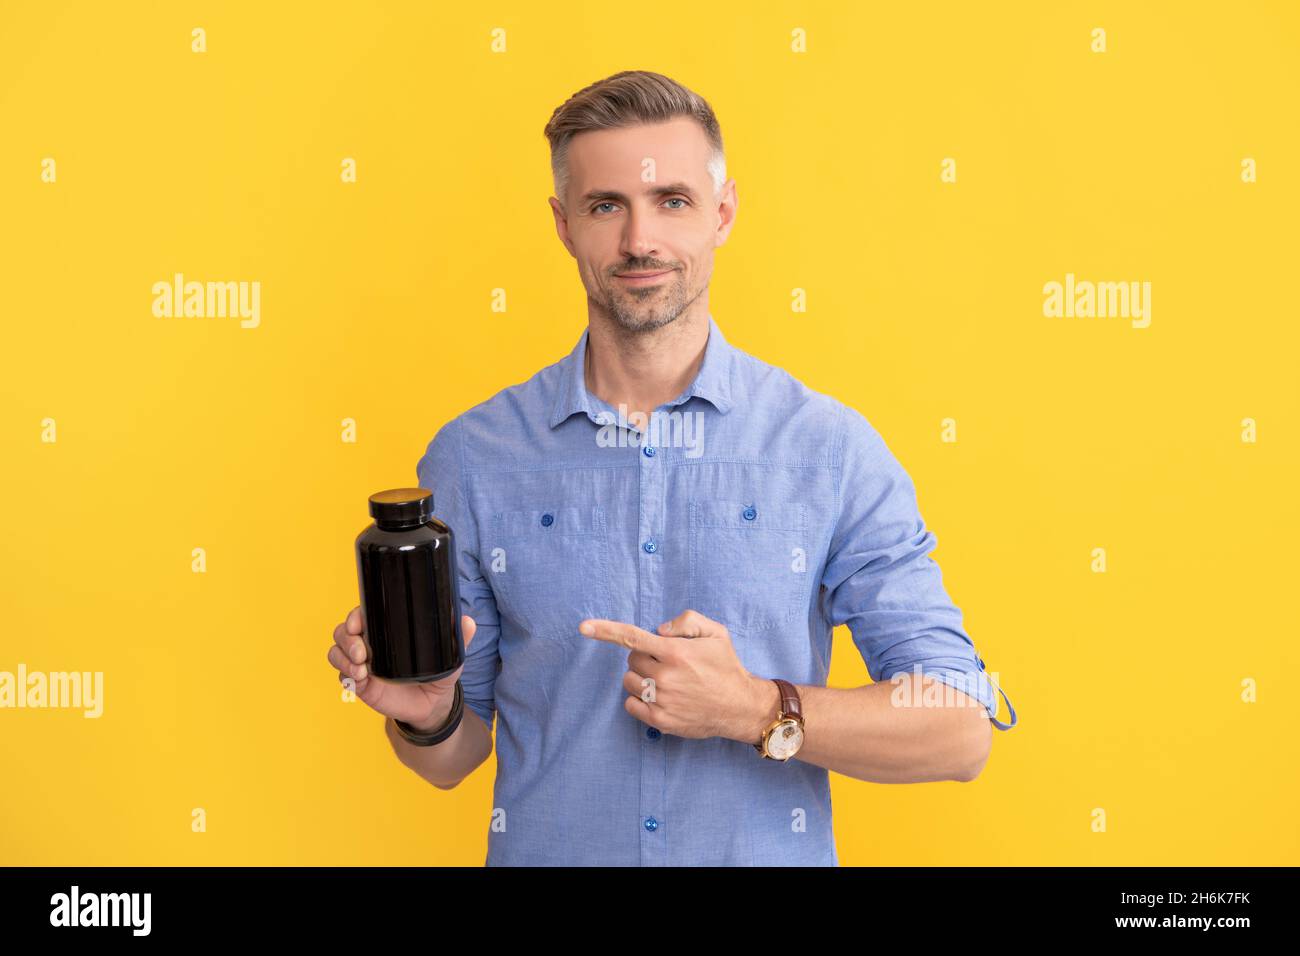 un homme adulte pointant du doigt sur un pot de médicament sur fond jaune, additif alimentaire Banque D'Images